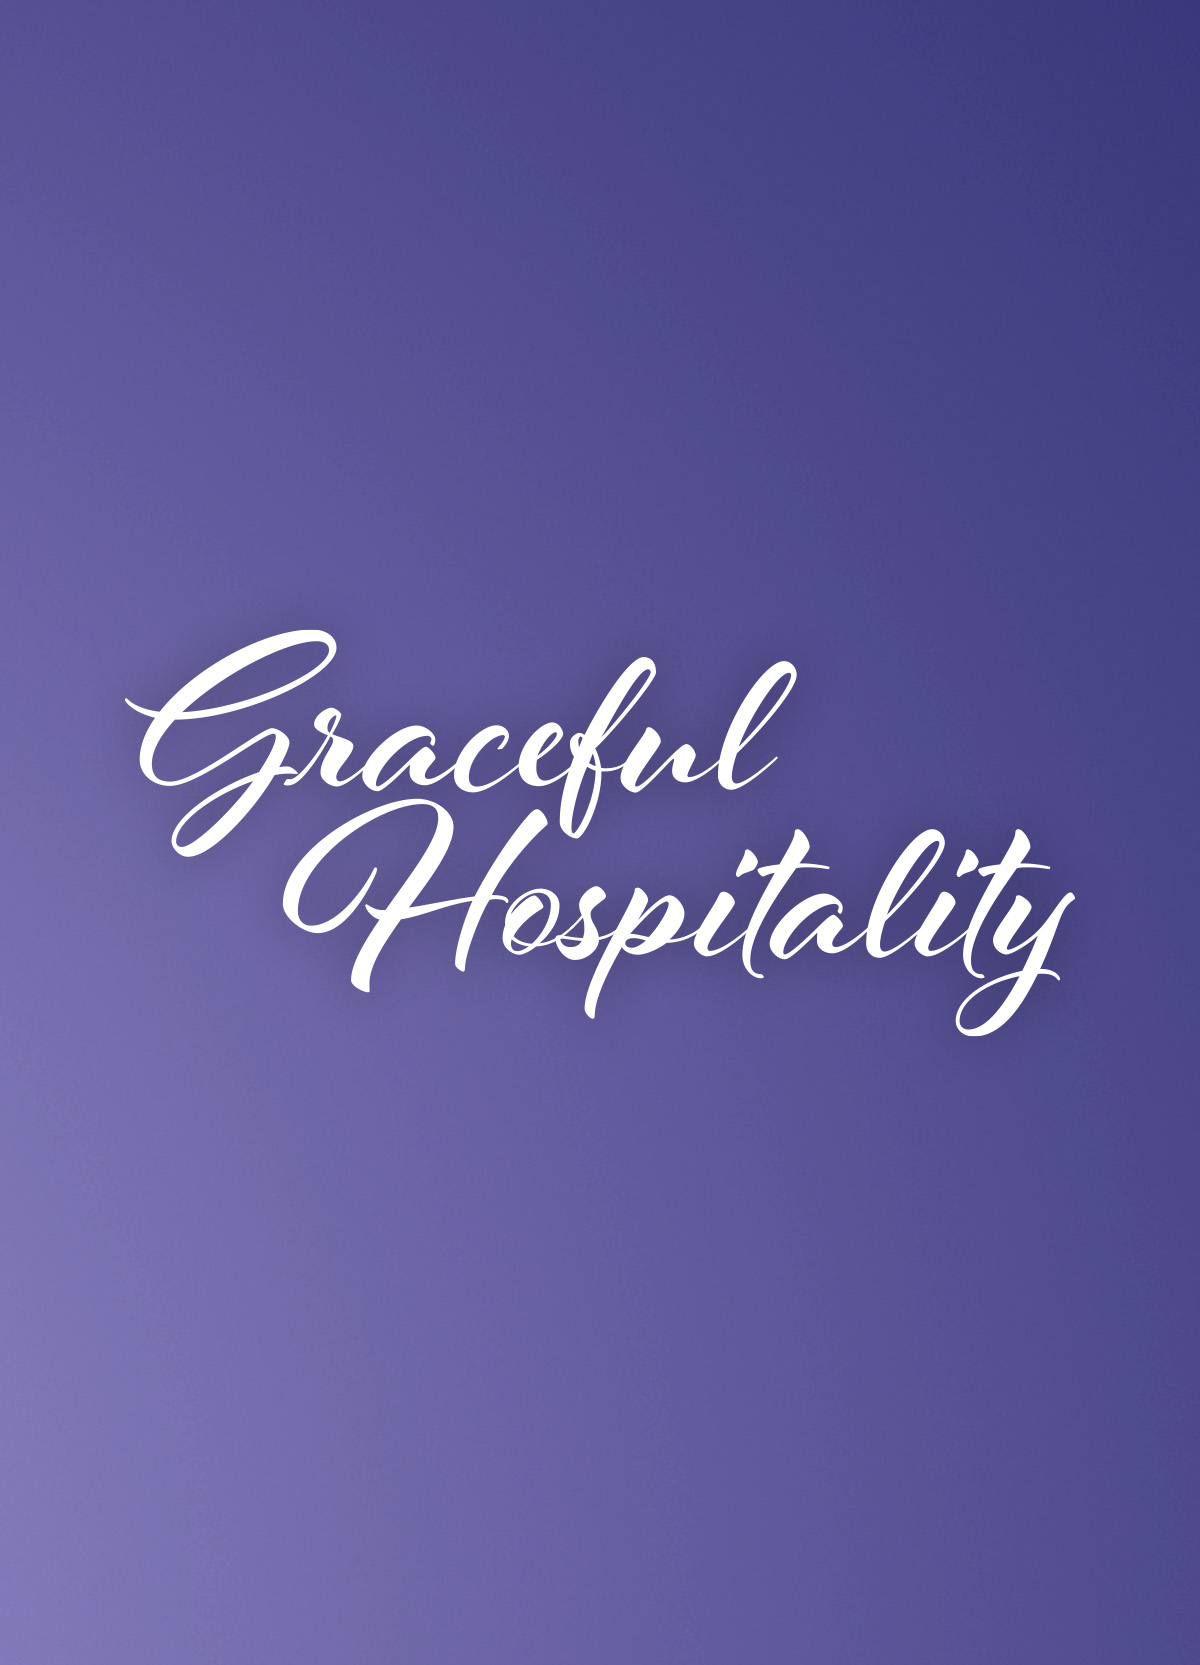 Graceful Hospitality Logo